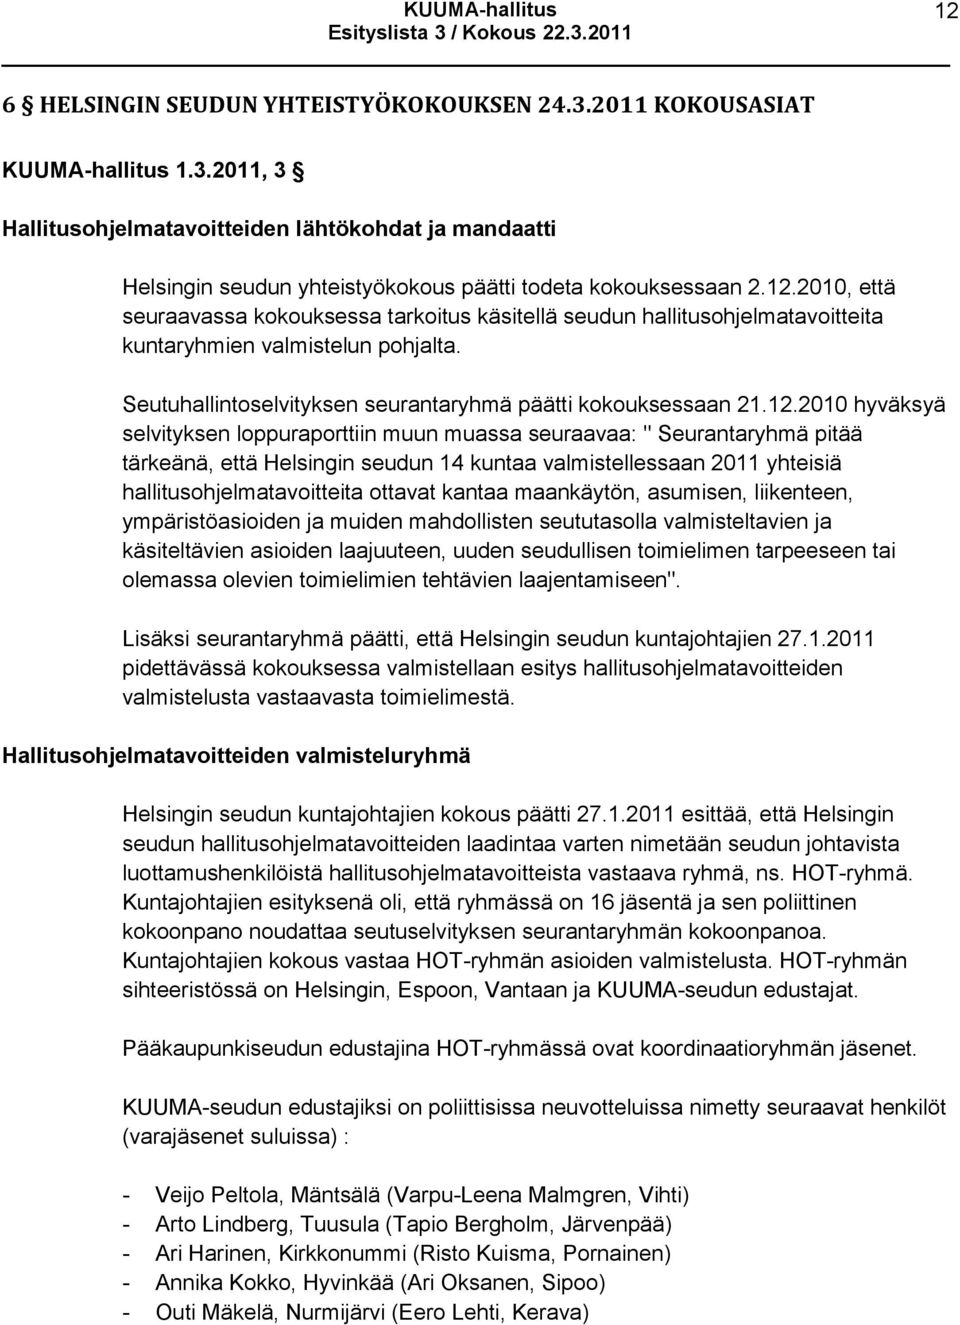 hyväksyä selvityksen loppuraporttiin muun muassa seuraavaa: " Seurantaryhmä pitää tärkeänä, että Helsingin seudun 14 kuntaa valmistellessaan 2011 yhteisiä hallitusohjelmatavoitteita ottavat kantaa